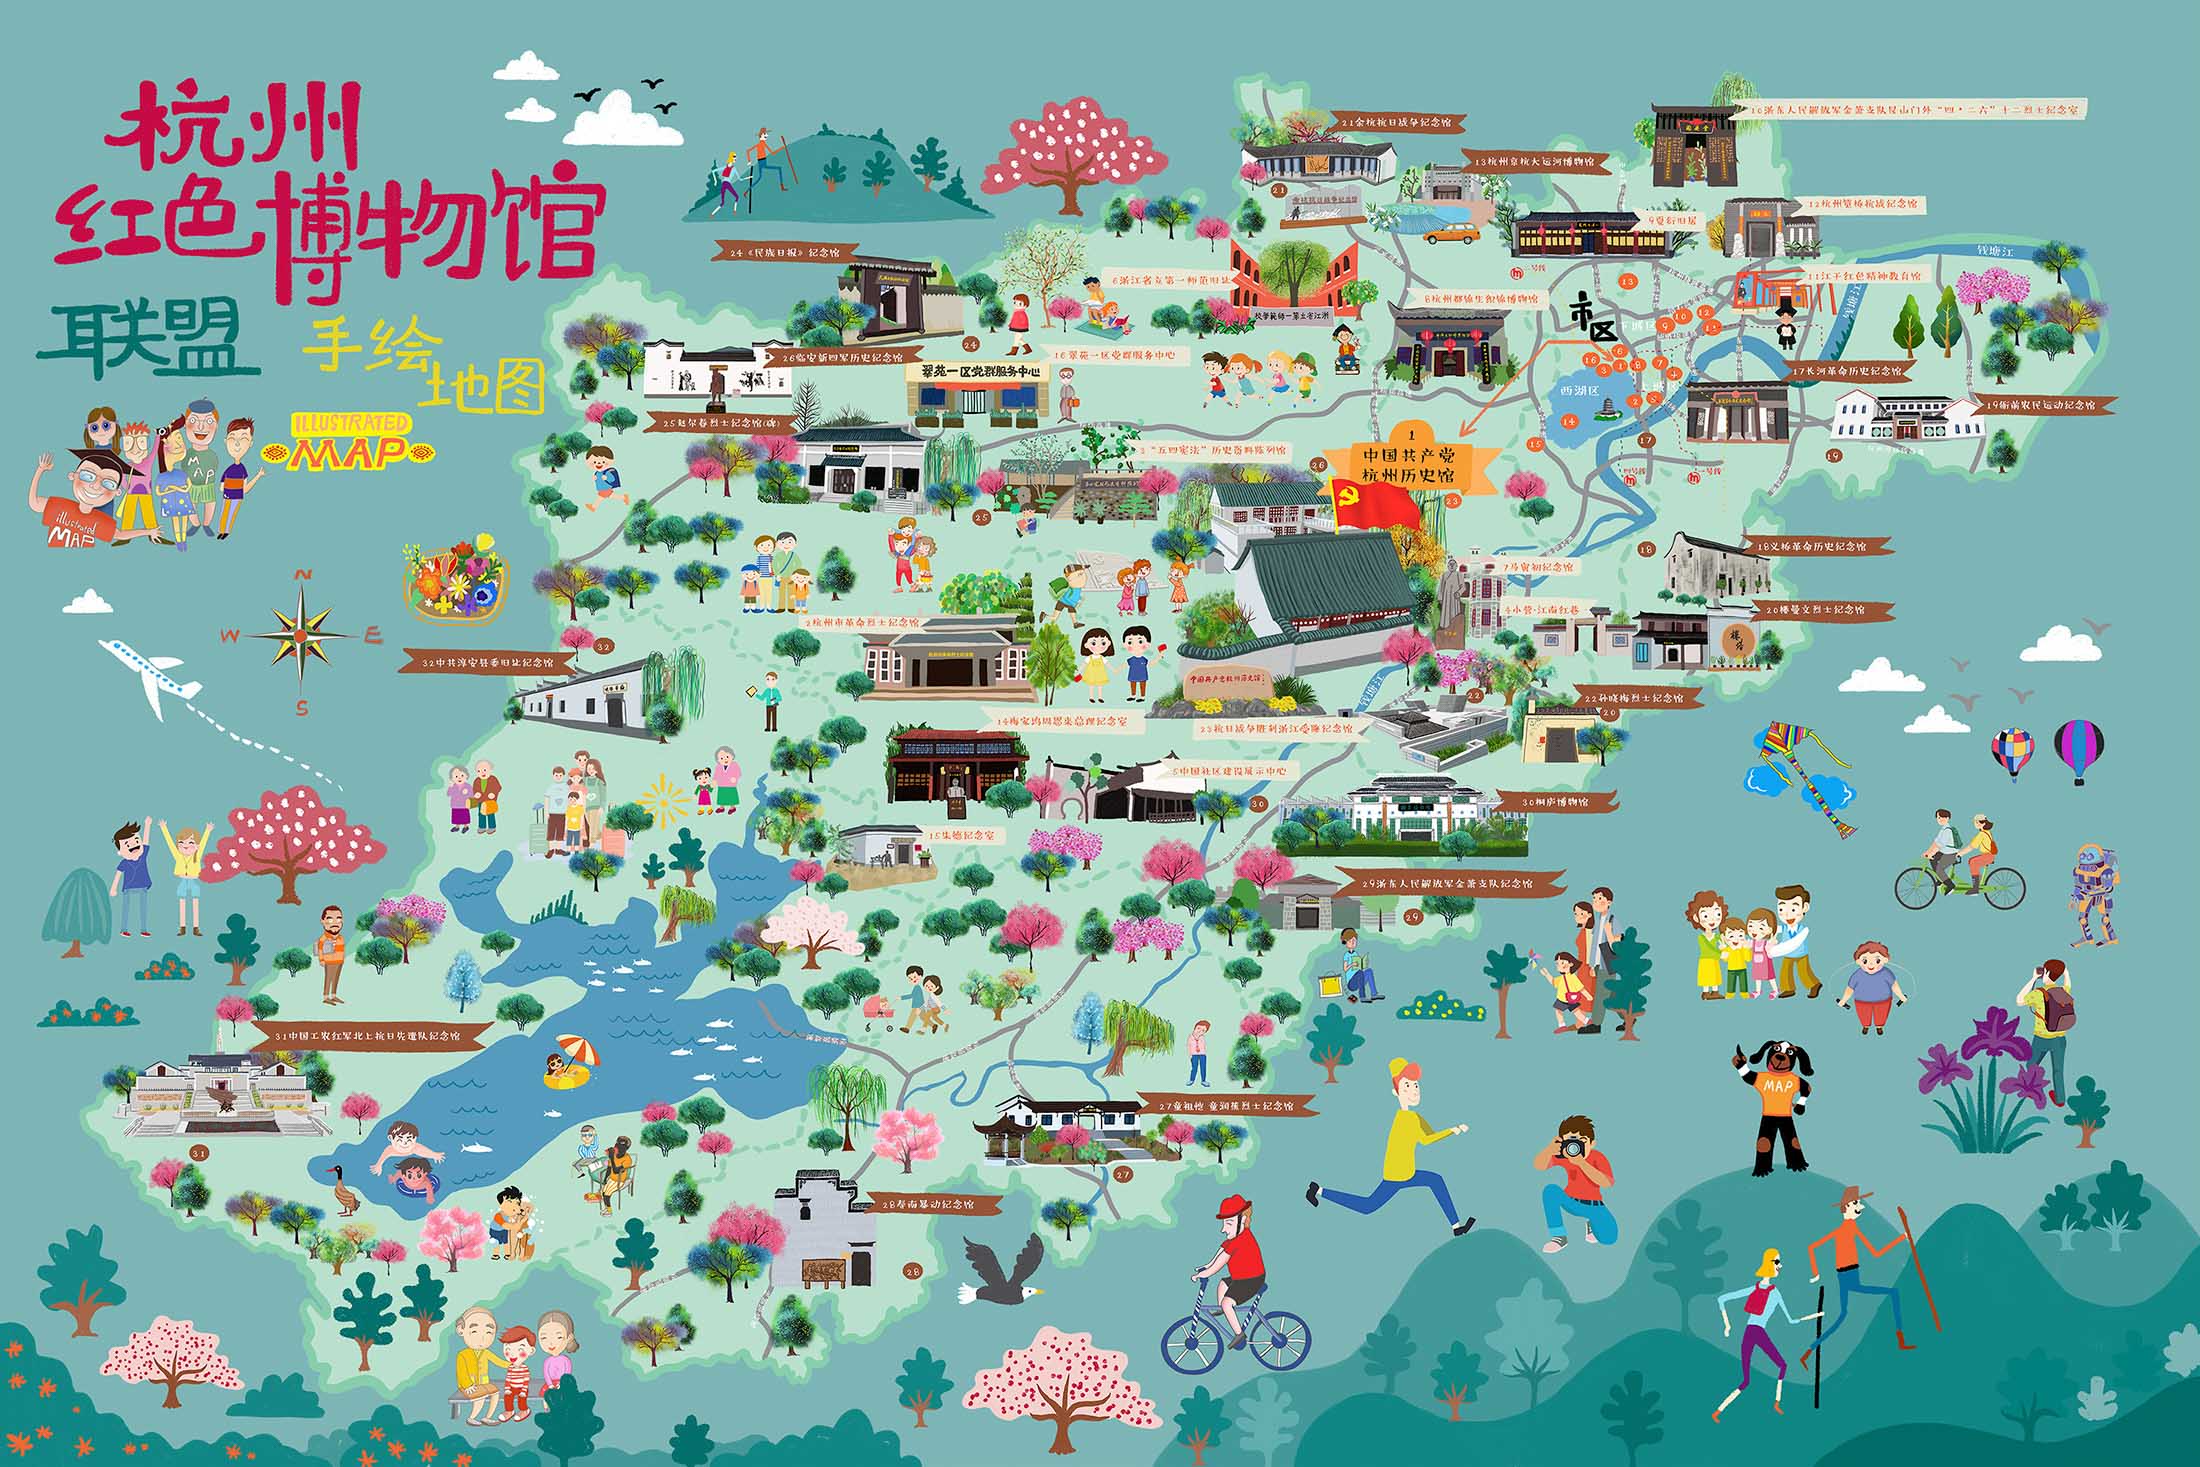 扬州手绘地图与科技的完美结合 